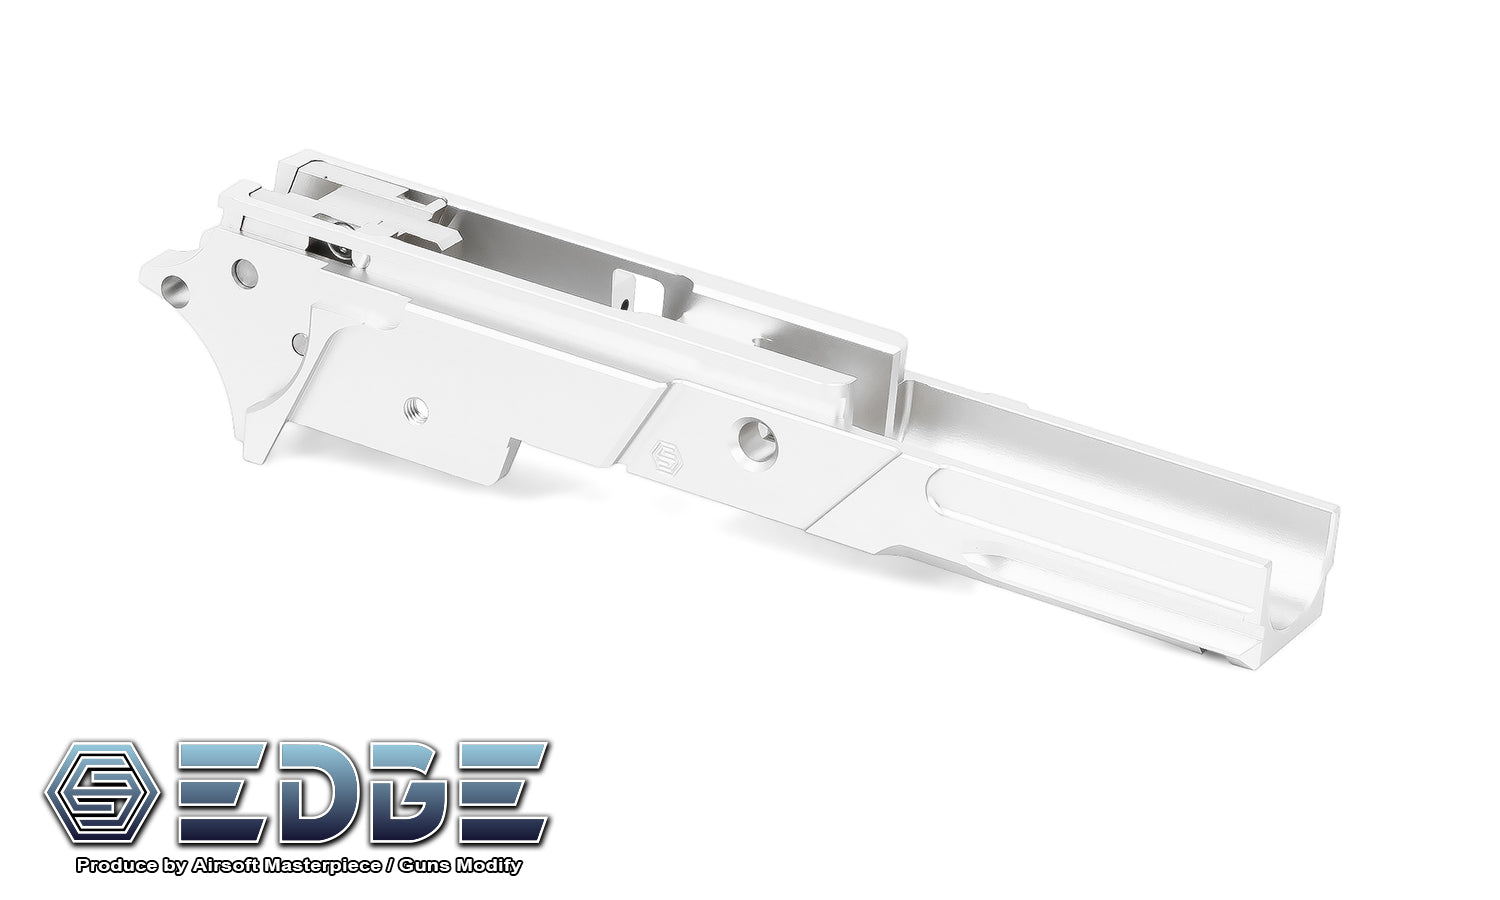 EDGE “STRAT” 3.9" Aluminum Frame for Hi-CAPA - Silver